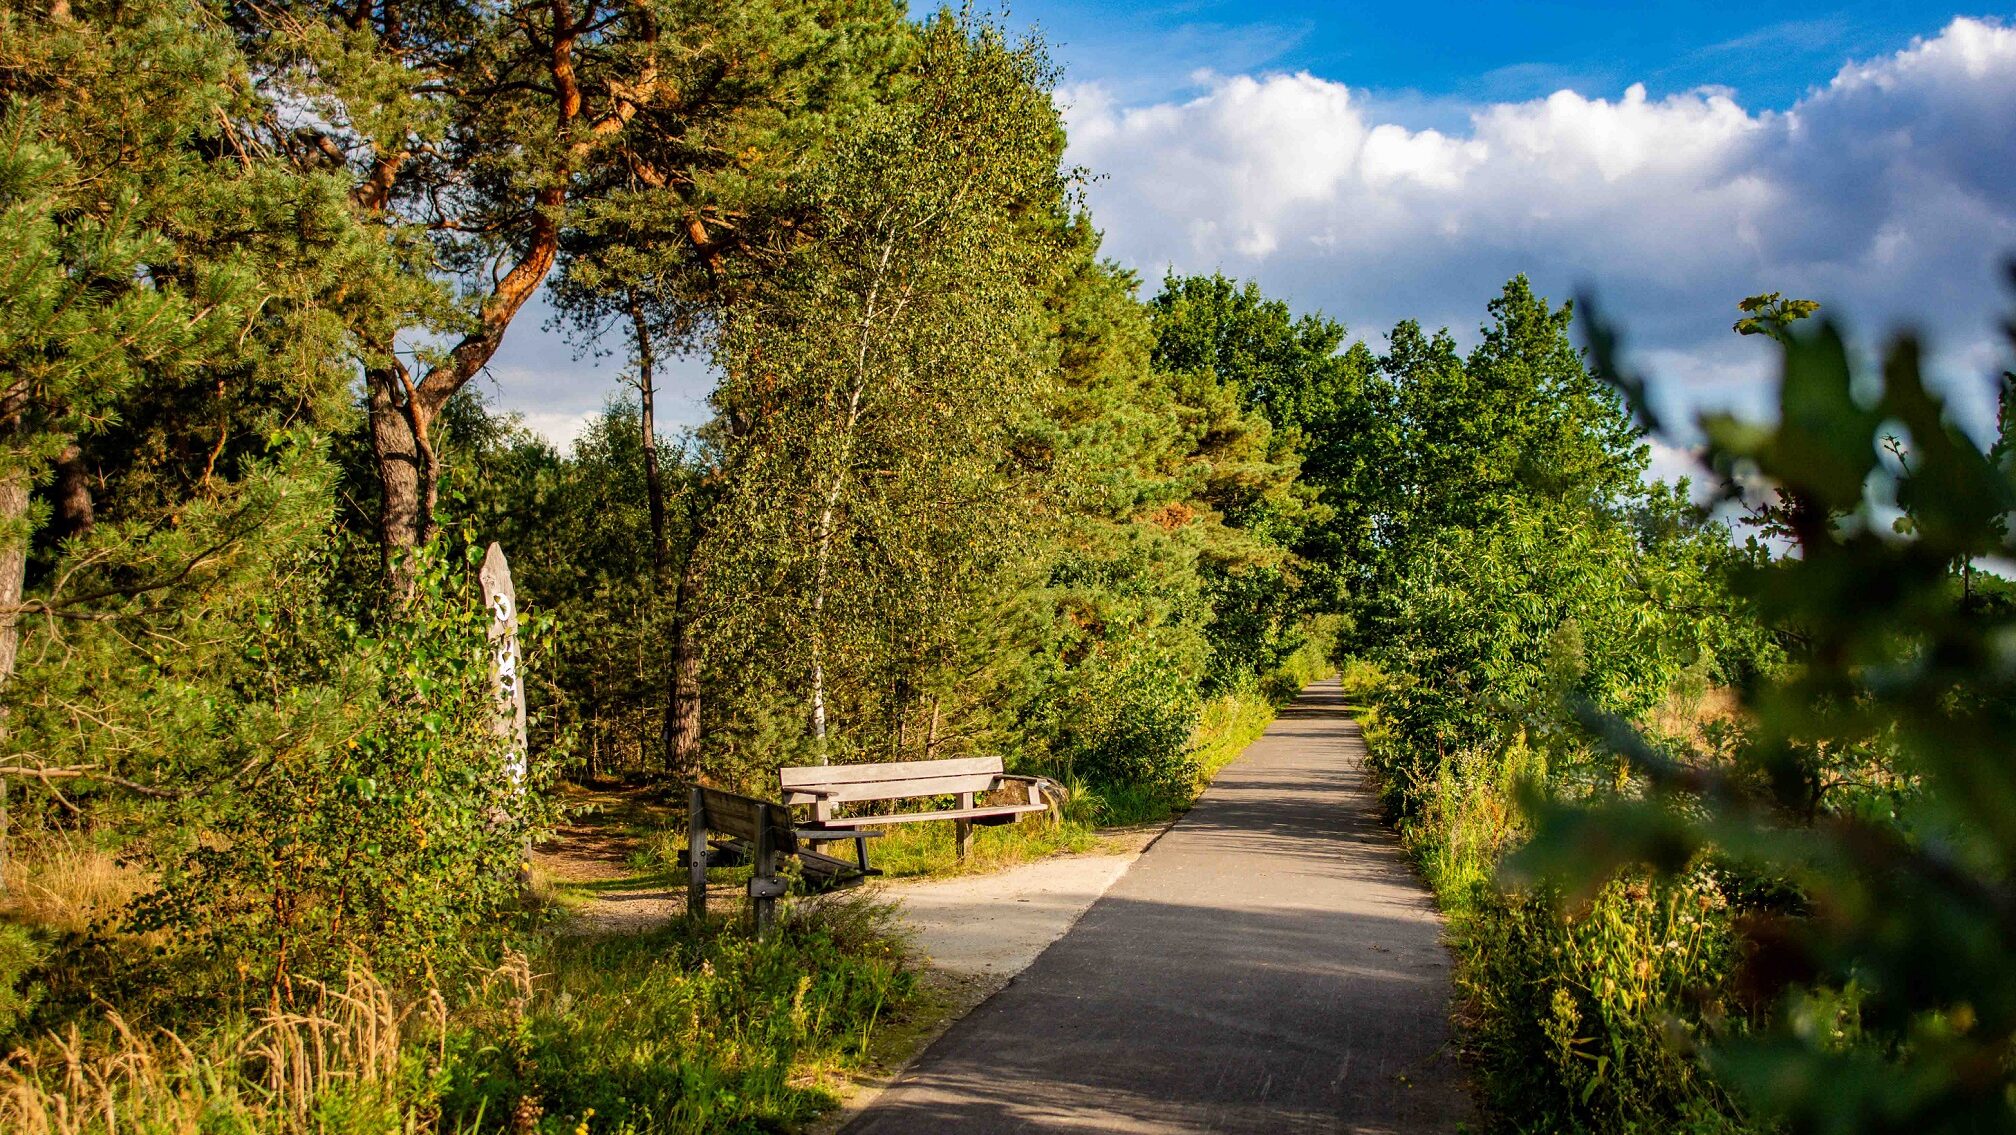 Wandelpad in Kattenbos met twee bankjes, perfect voor een ontspannen wandeling in de natuur.